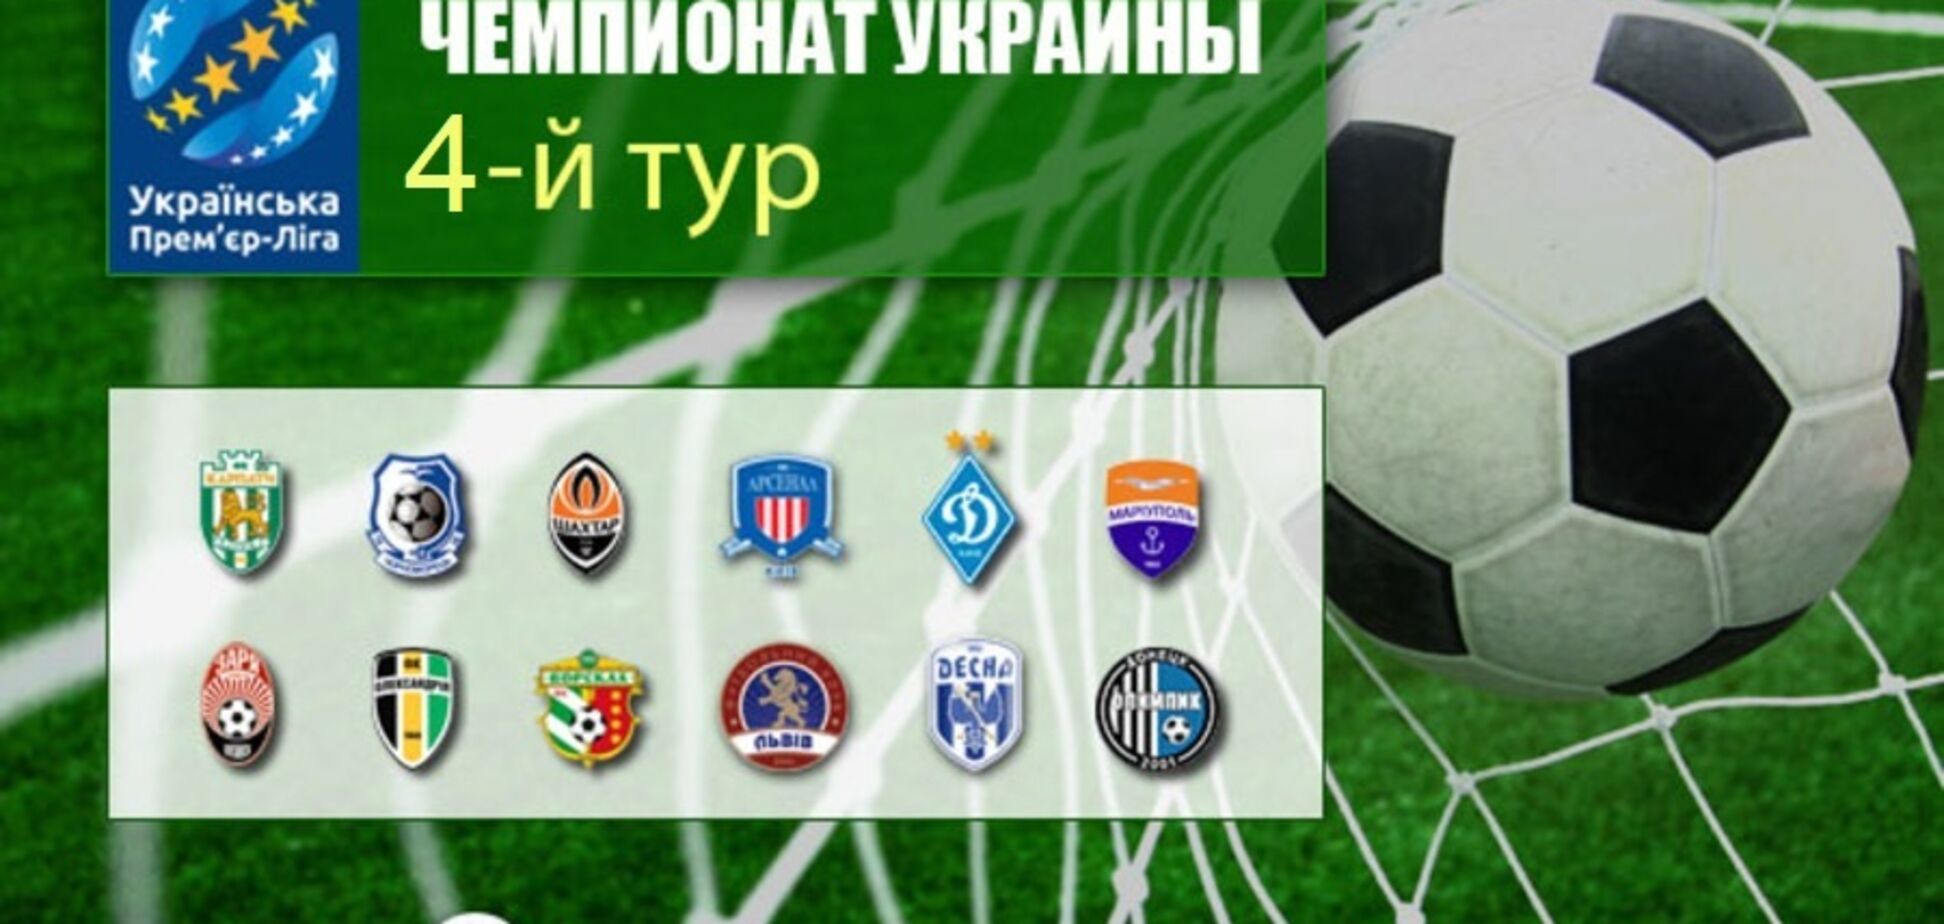 4-й тур чемпионата Украины по футболу: где смотреть, результаты и расписание